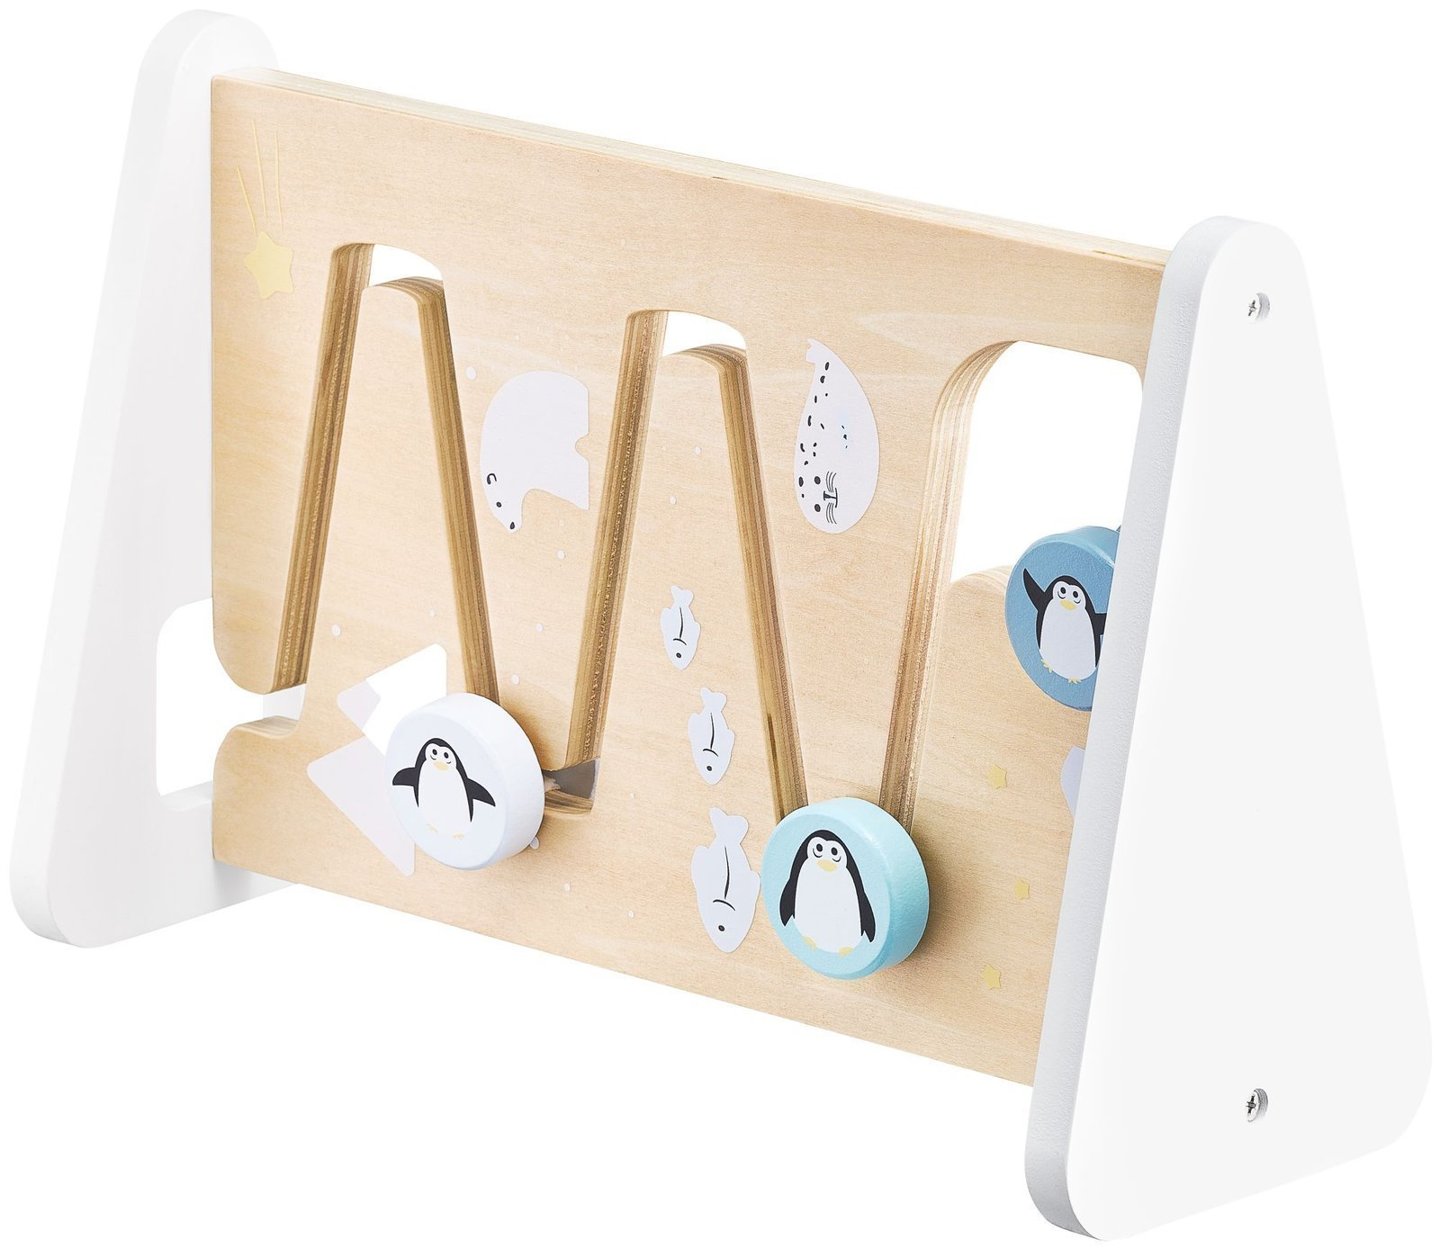 Wooden double-sided sensory board